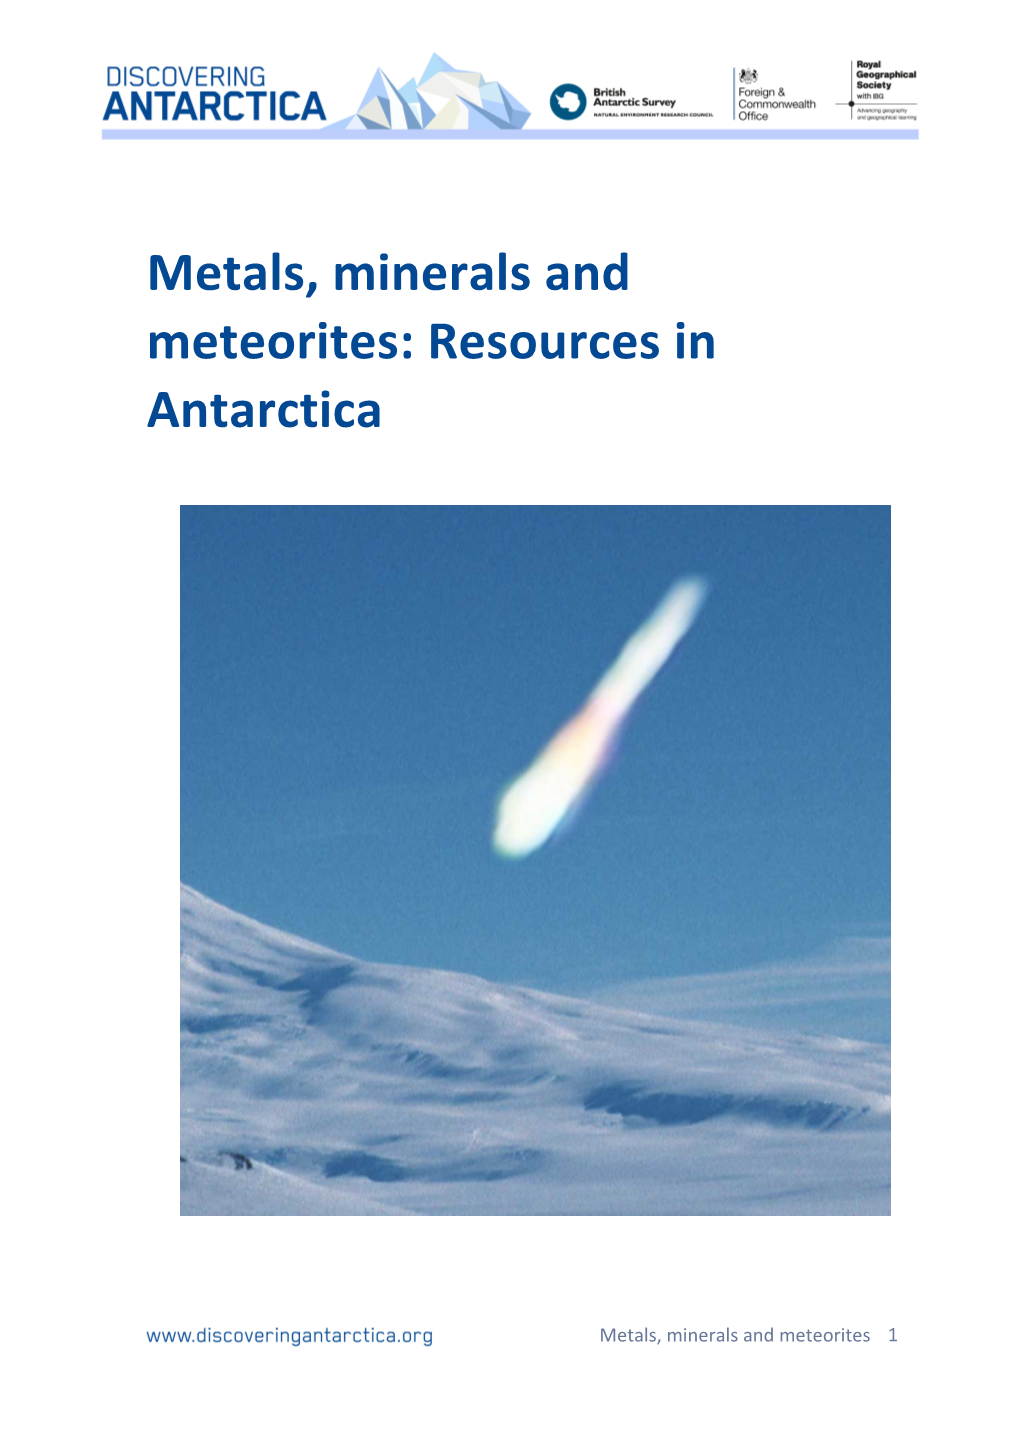 Metals, Minerals and Meteorites: Resources in Antarctica